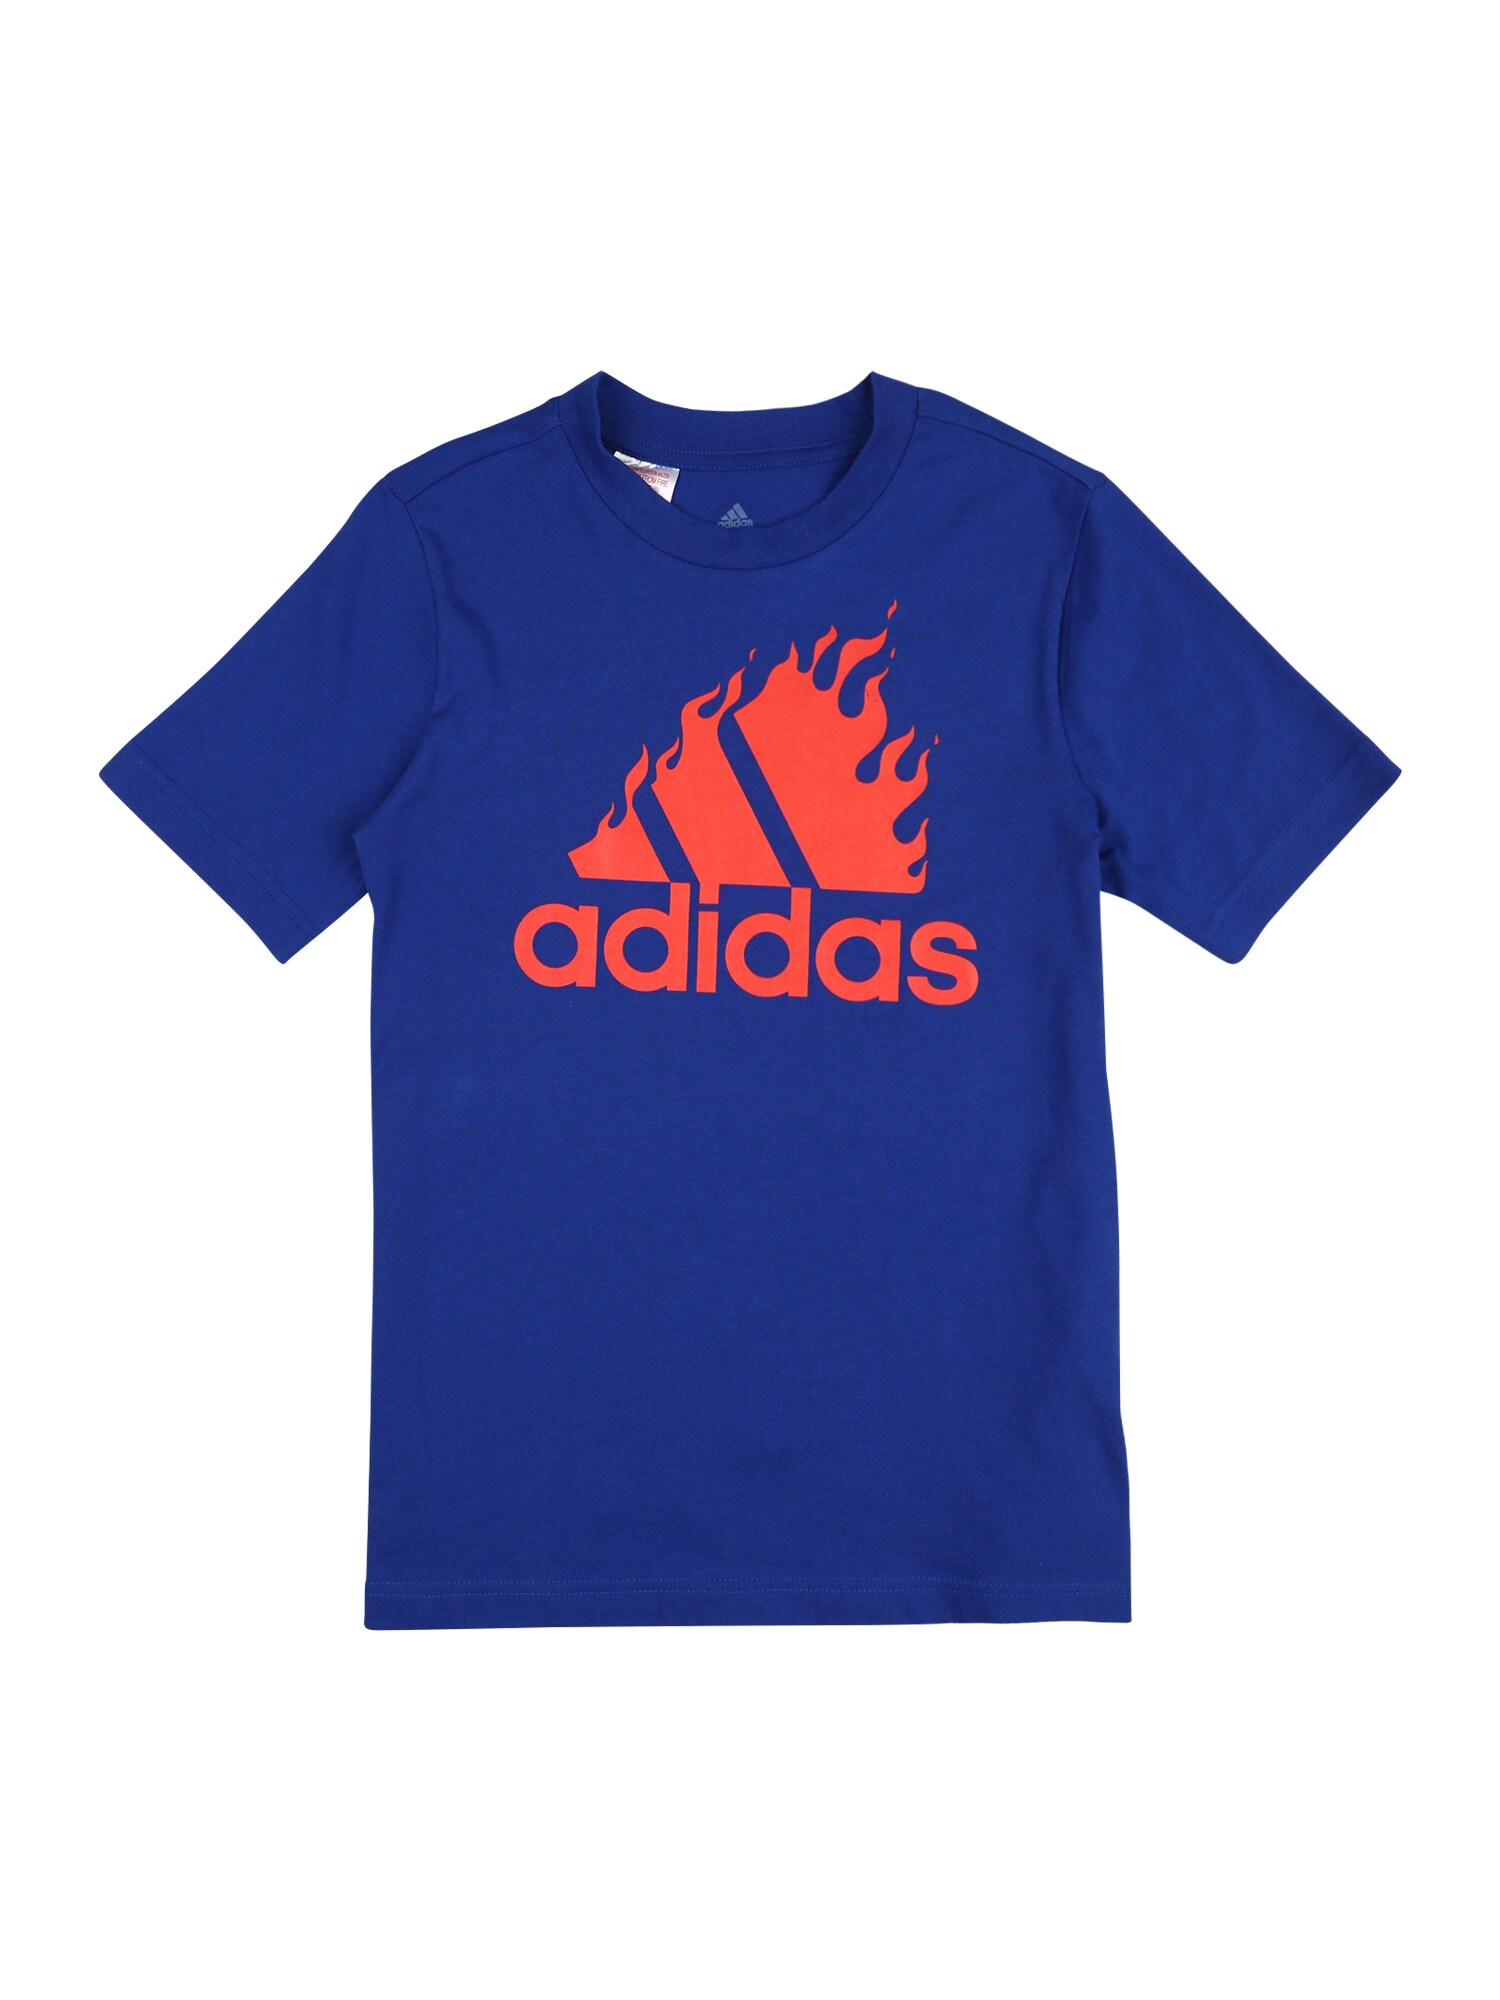 ADIDAS PERFORMANCE Sportiniai marškinėliai  sodri mėlyna („karališka“) / šviesiai raudona